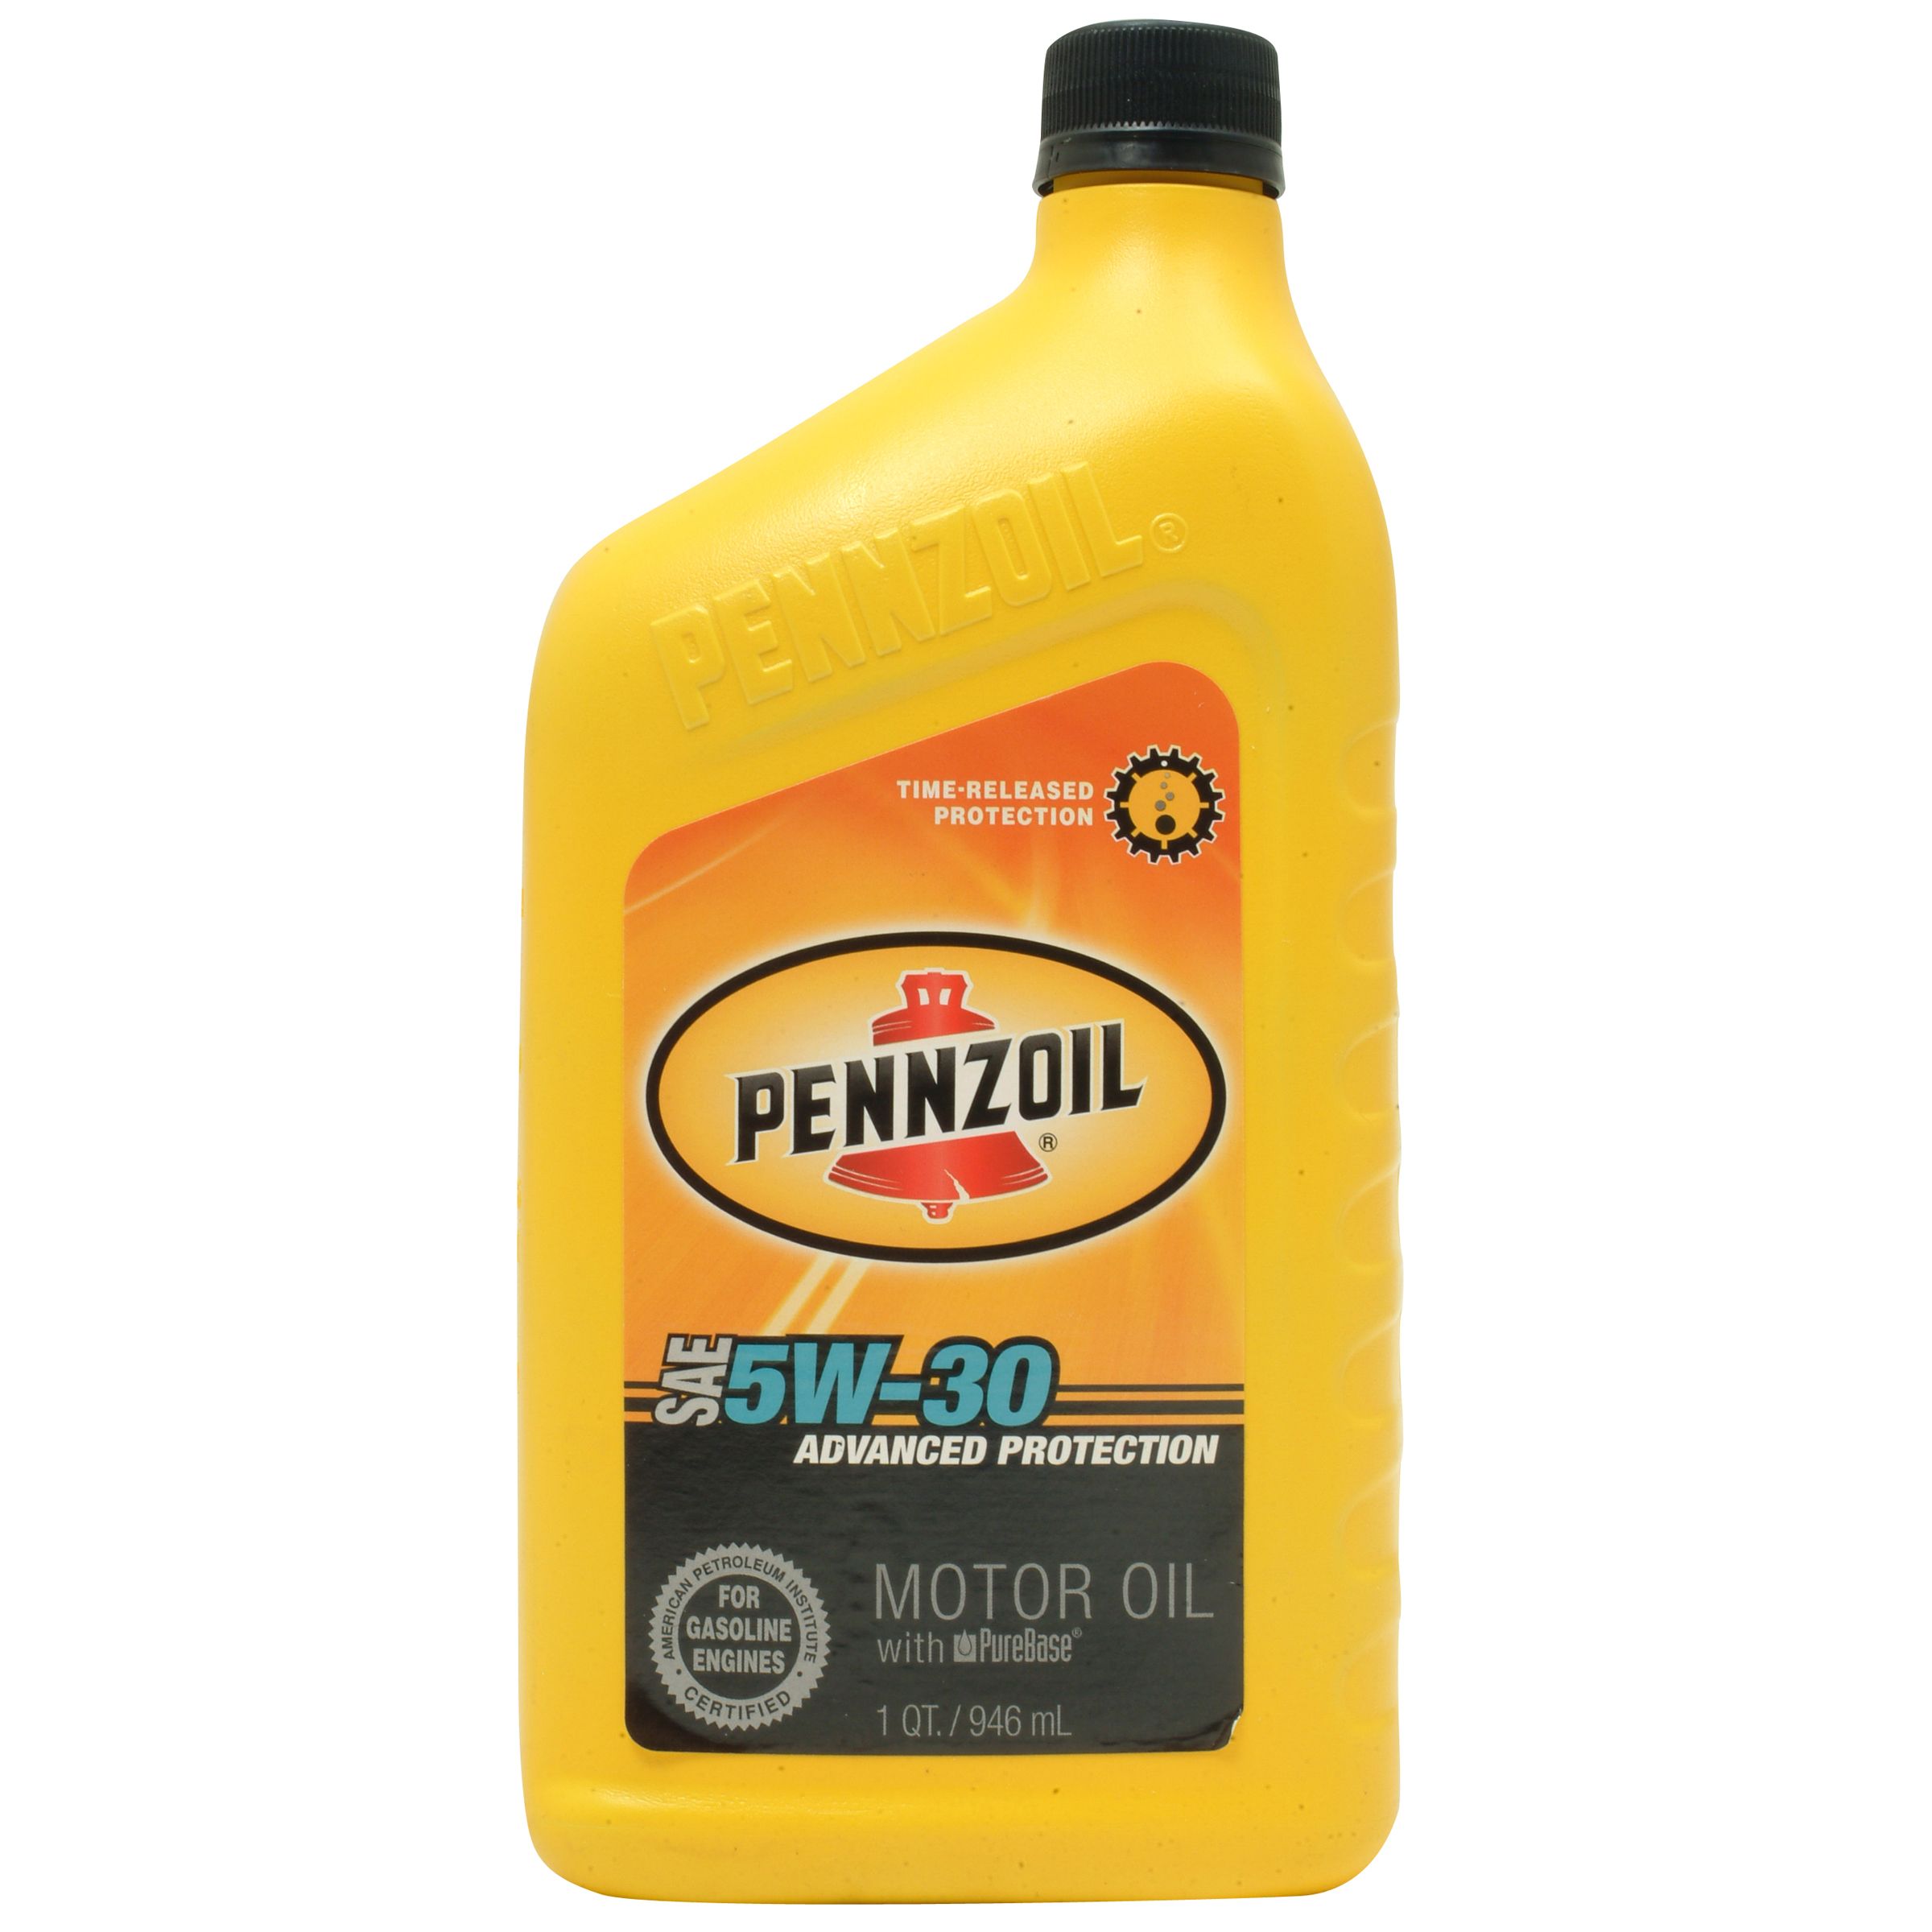 Pennzoil Motor Oil 1-quart